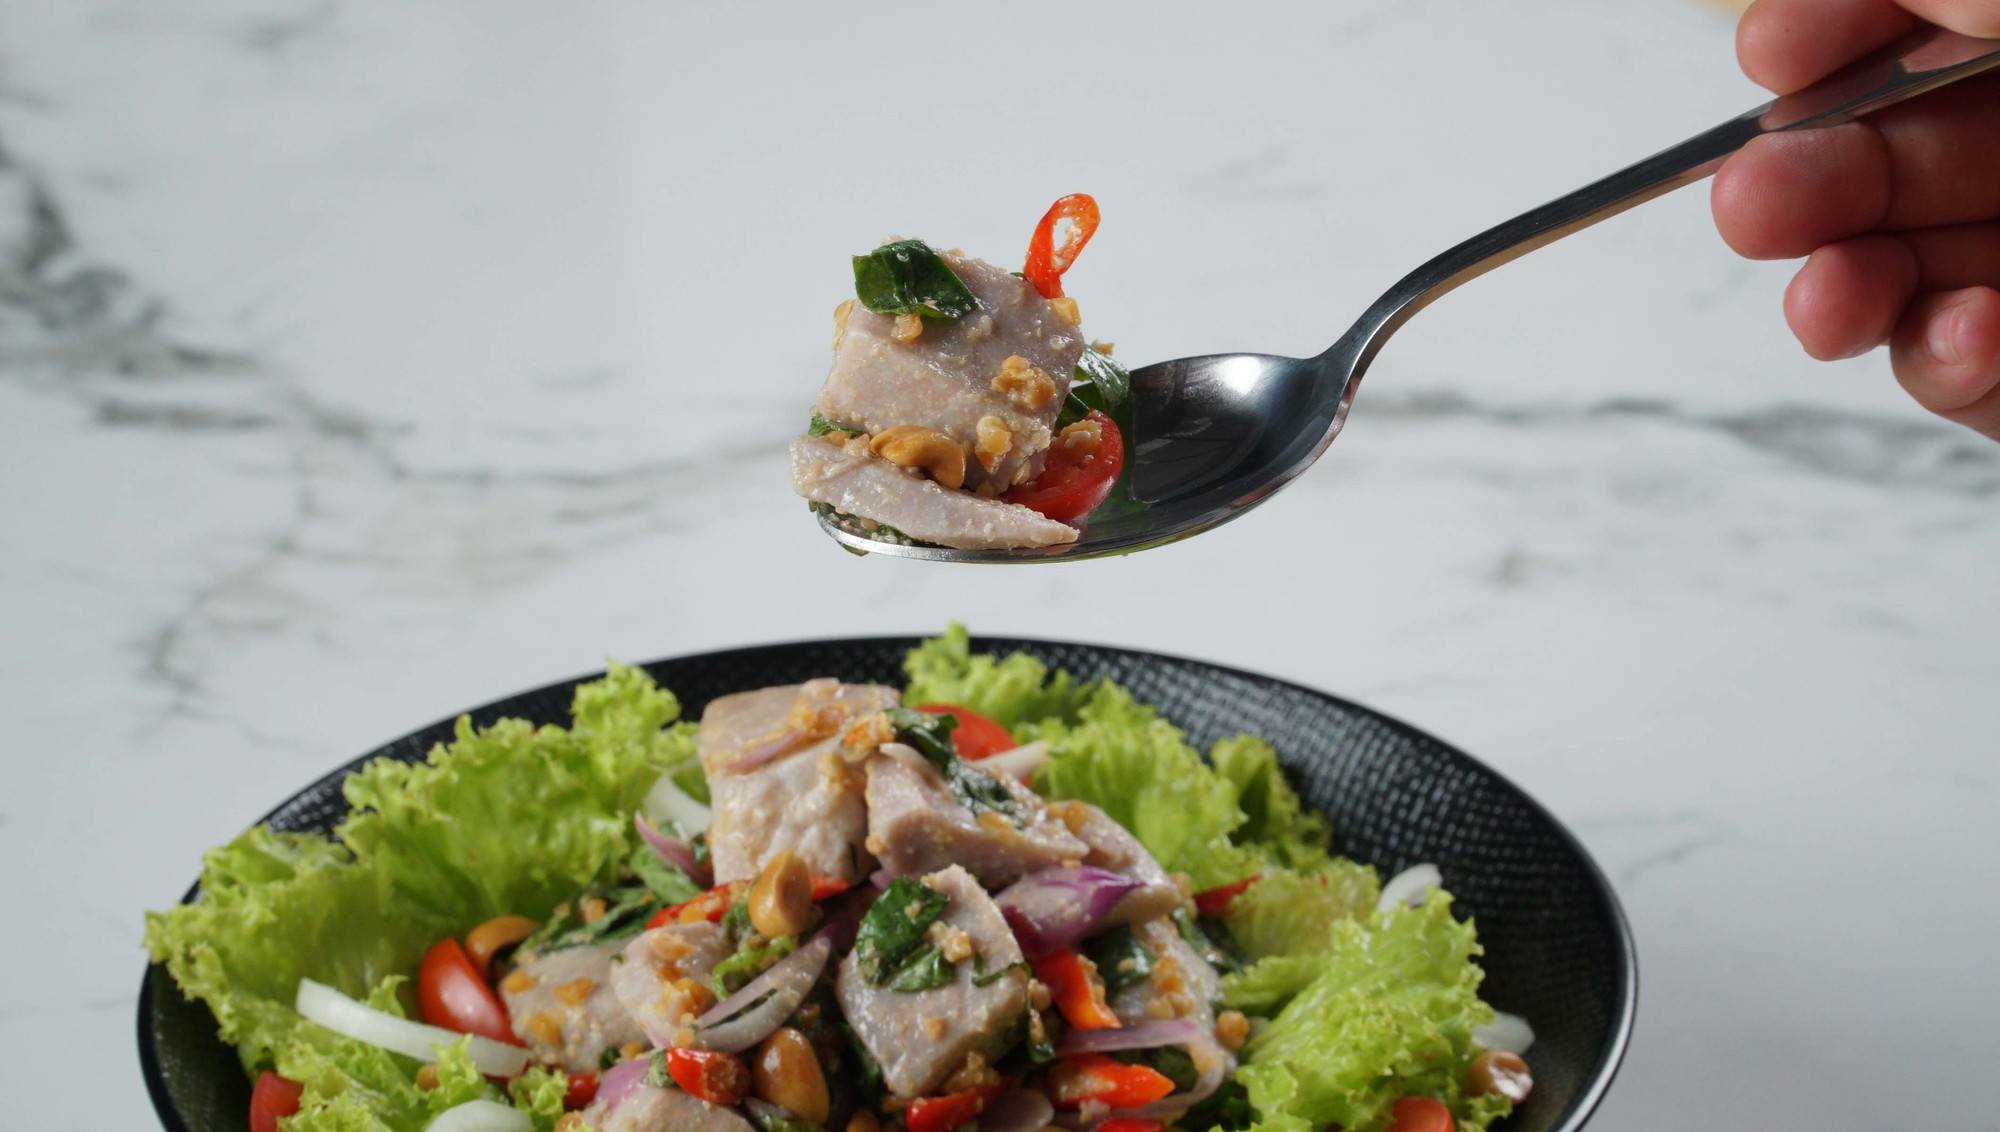 Resep Gohu Ikan Salad Sayur - Masak Apa Hari Ini?